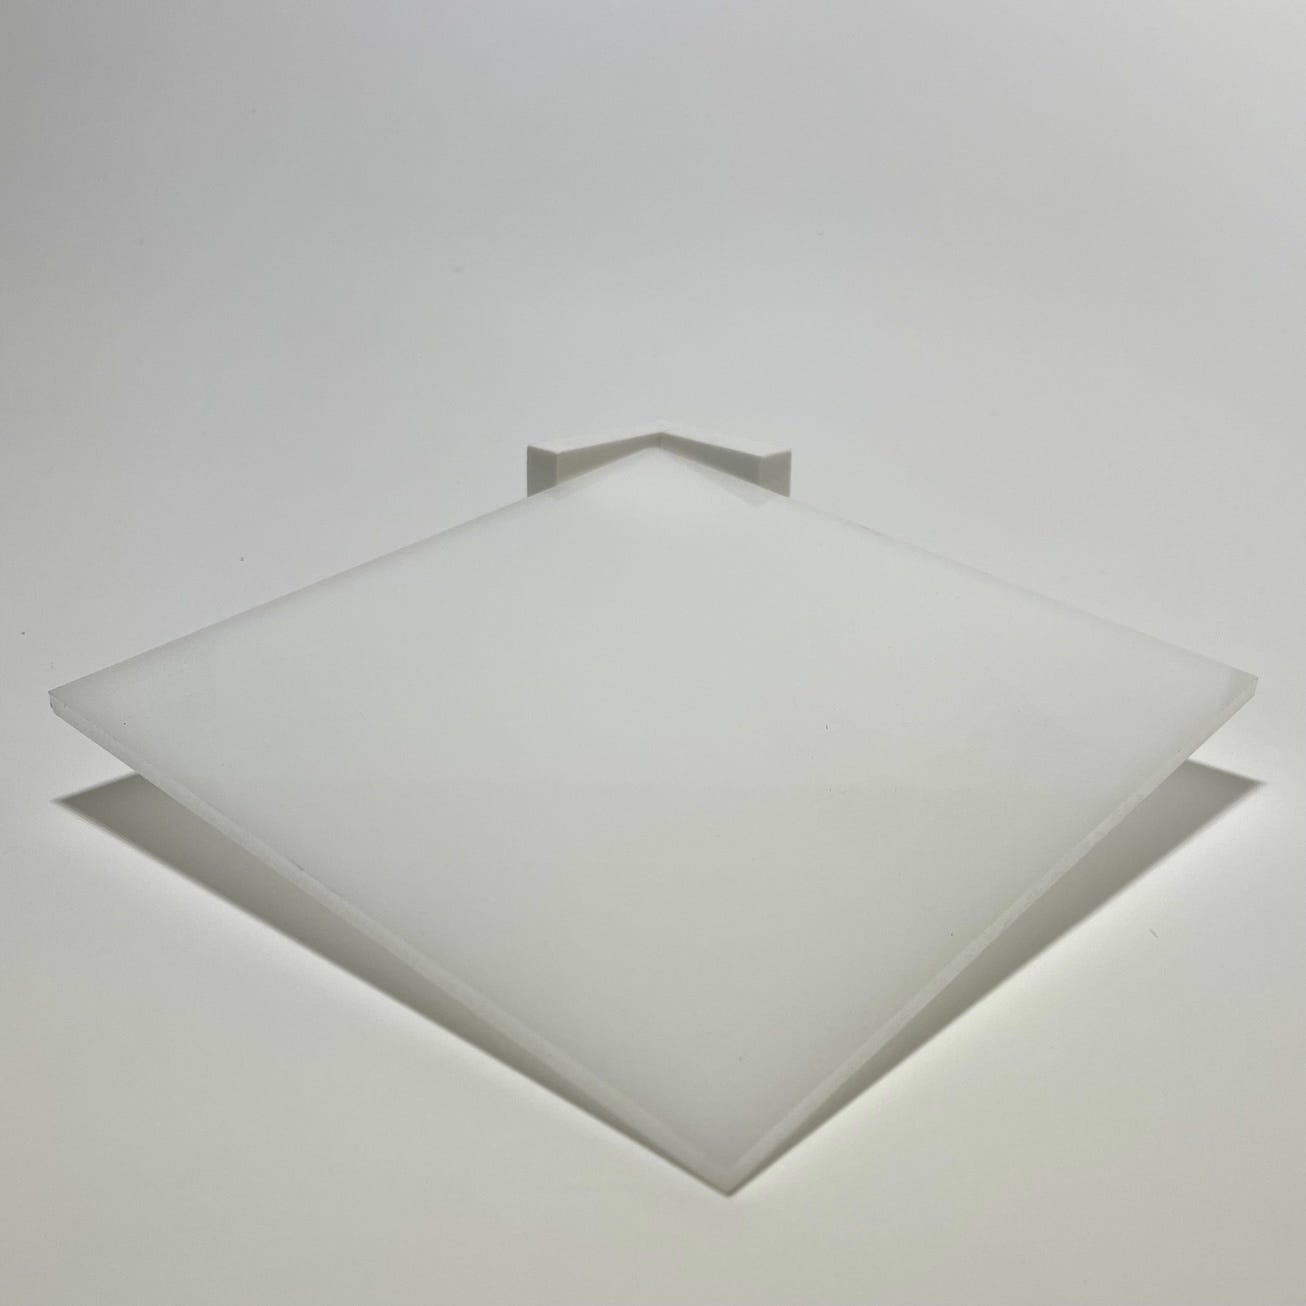 Plaque Plexigglas 1 mm. Feuille de verre acrylique. Plexigglas transparent.  Verre synthétique. Plaque PMMA XT. Plexigglas extrudé - 10 x 10 cm (100 x  100 mm)